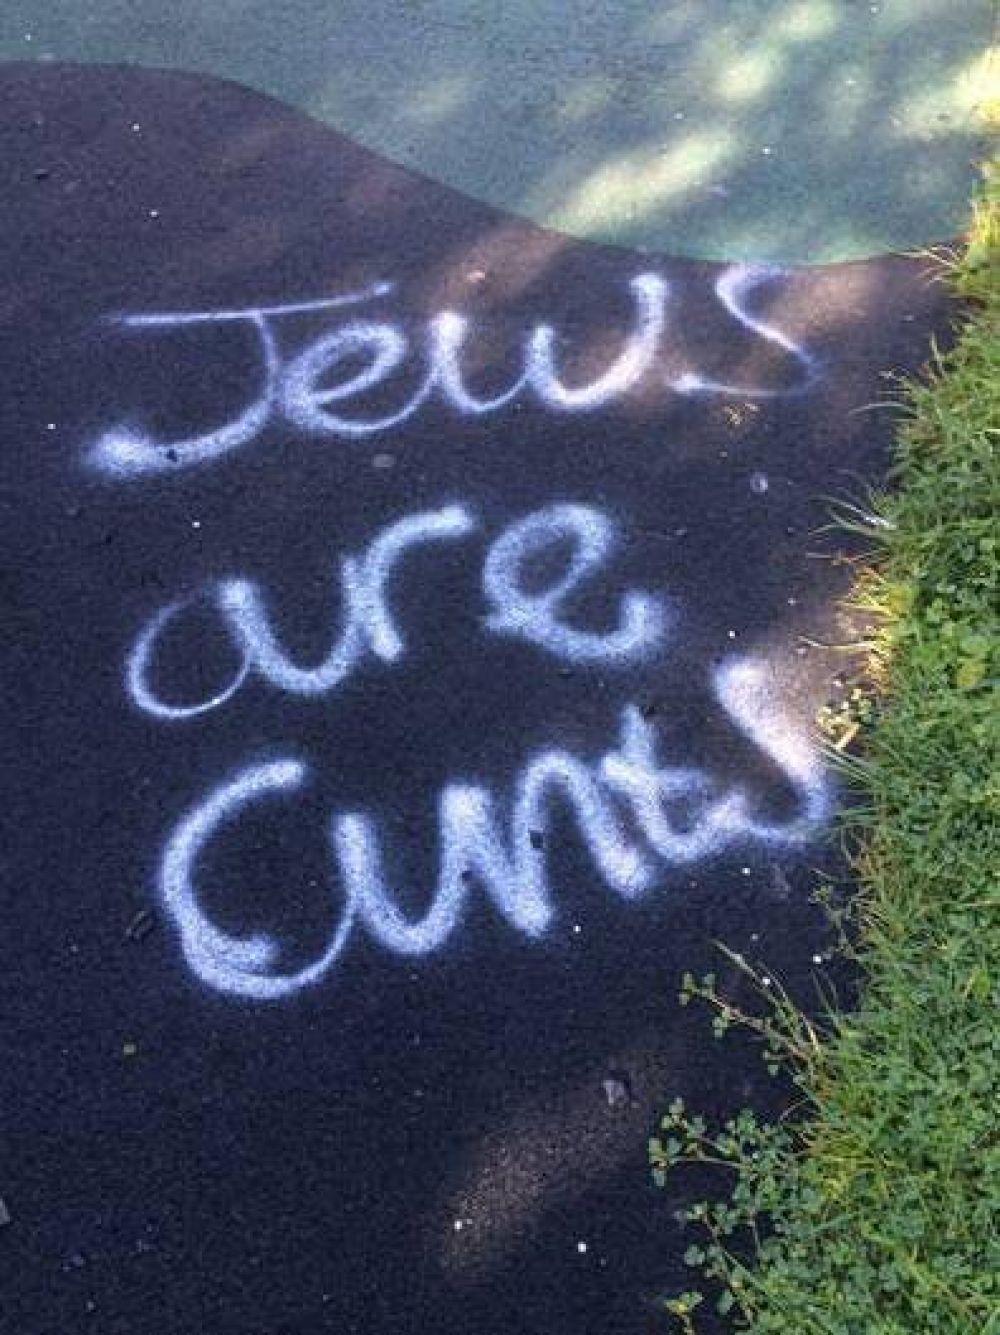 Gran Bretaa: Graffiti antisemita